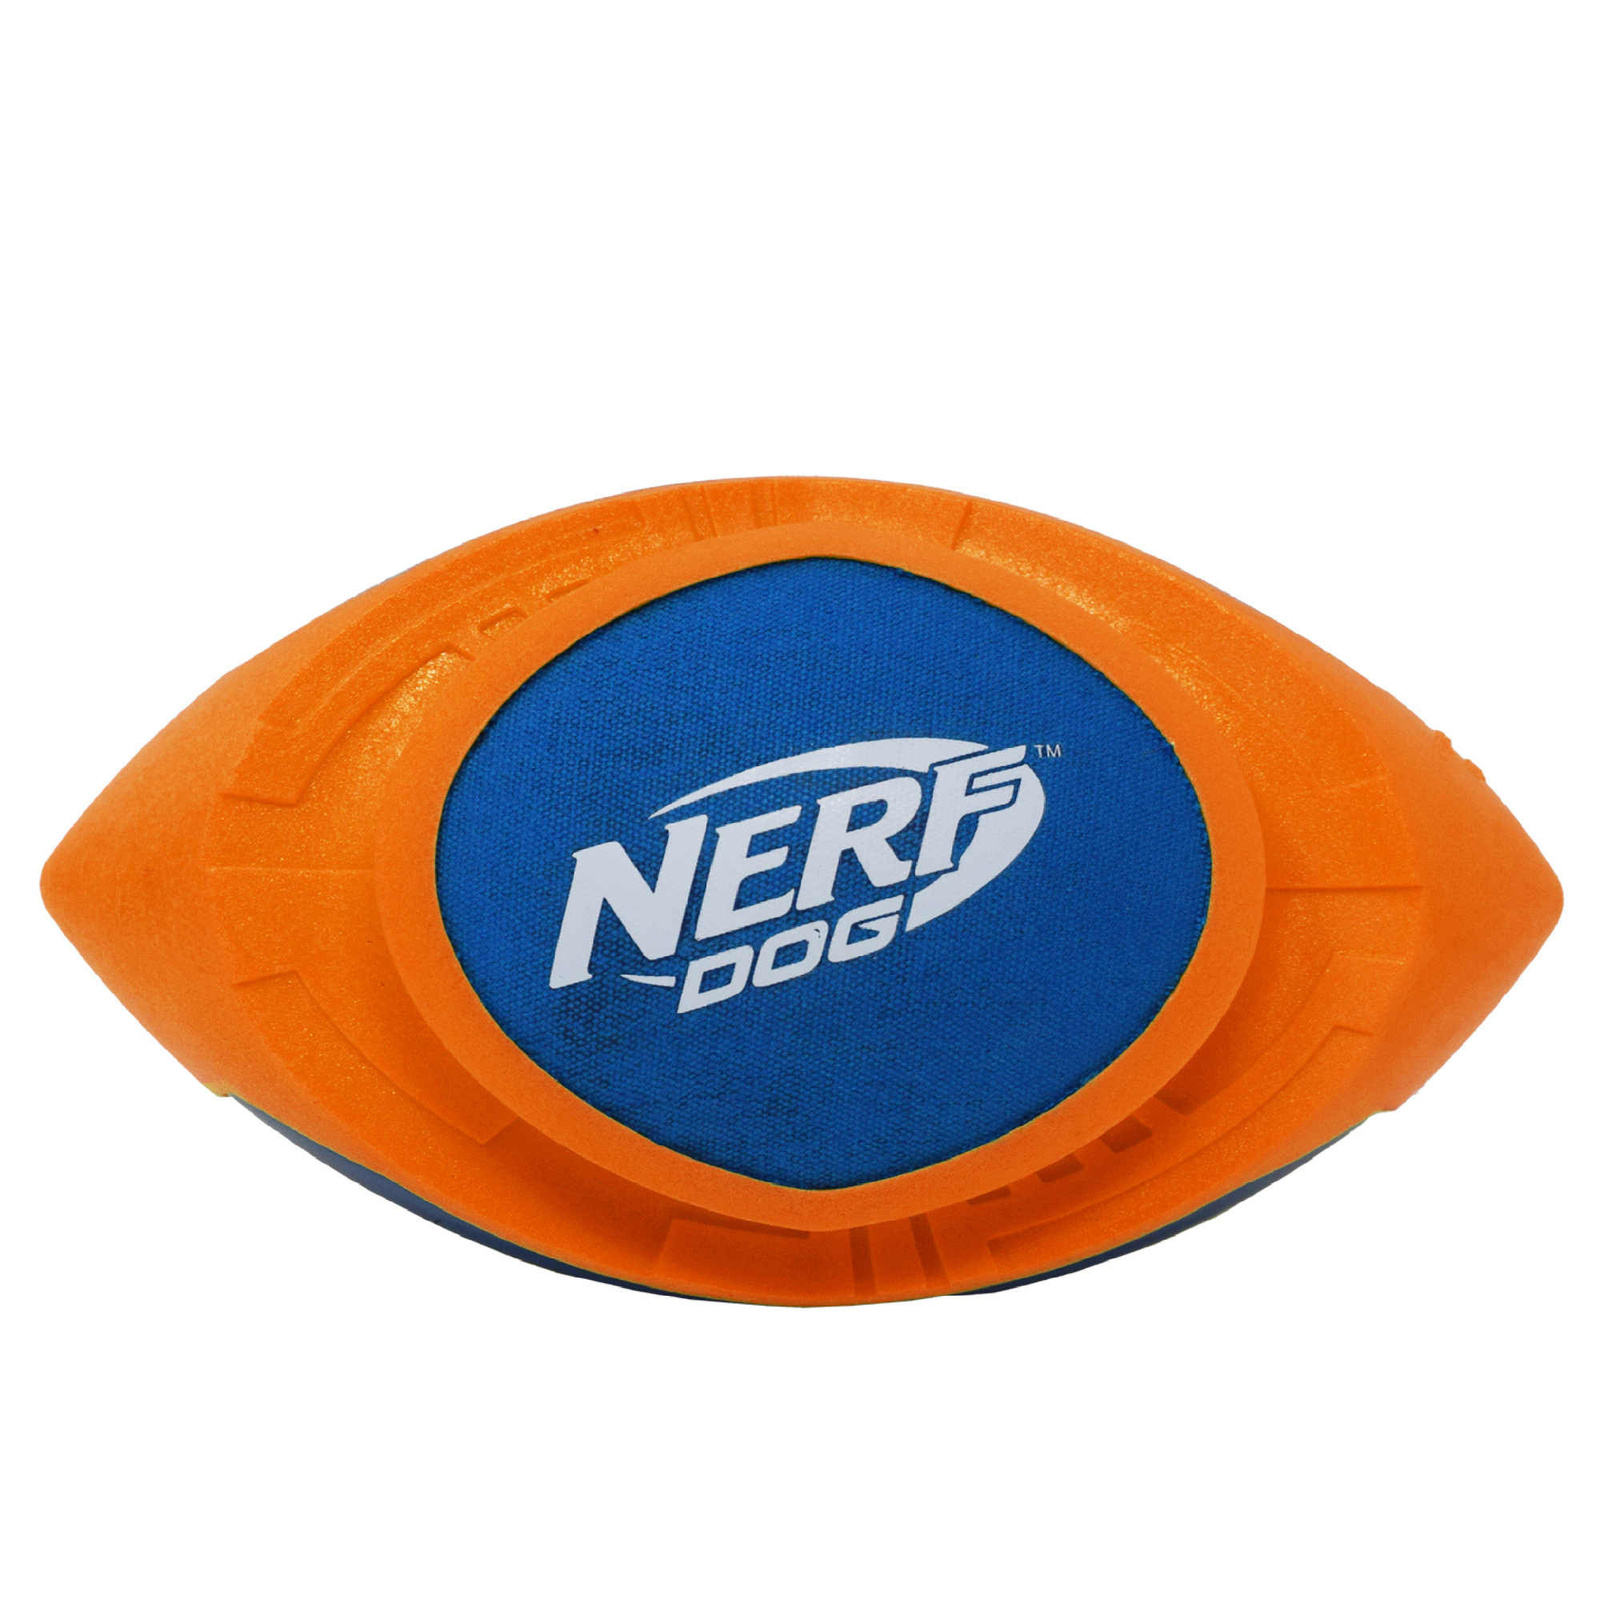 Nerf Nerf мяч для регби из вспененной резины и нейлона, 18 см (серия Мегатон), (синий/оранжевый) (263 г) nerf nerf мяч для регби из термопластичной резины 18 см серия мегатон синий оранжевый 254 г